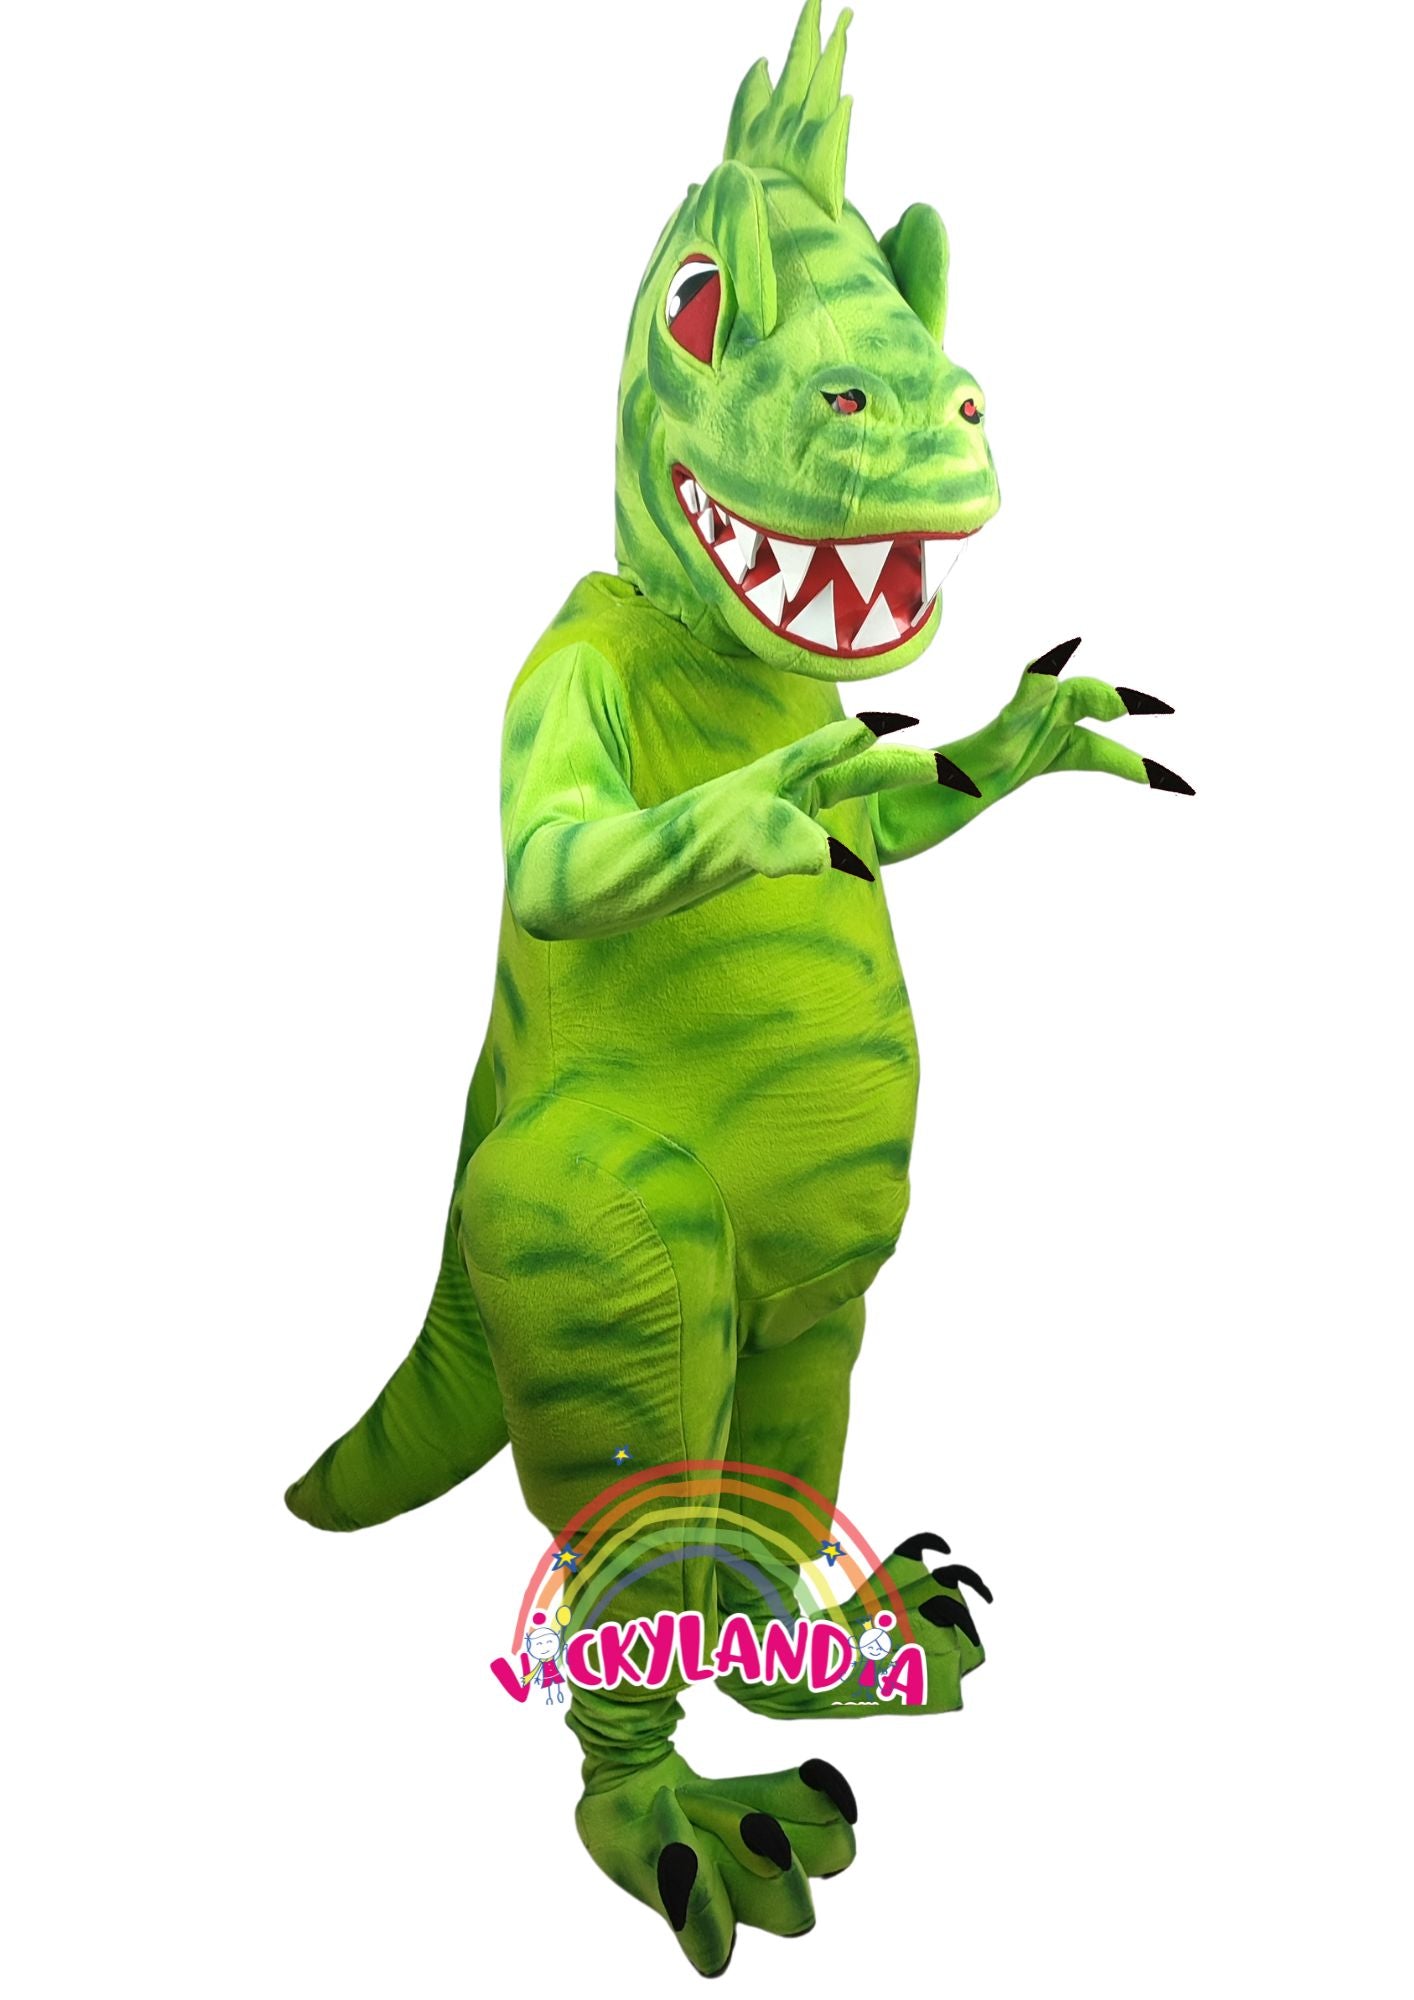 Descubre la magia de nuestro muñeco publicitario de Dinosaurio en Vickylandia. Son disfraces cabezones perfectos para fiestas infantiles, shows, cumpleaños, estrategias publicitarias, carnavales, fiestas patronales, espectáculos, cabalgatas y cualquier tipo de evento.